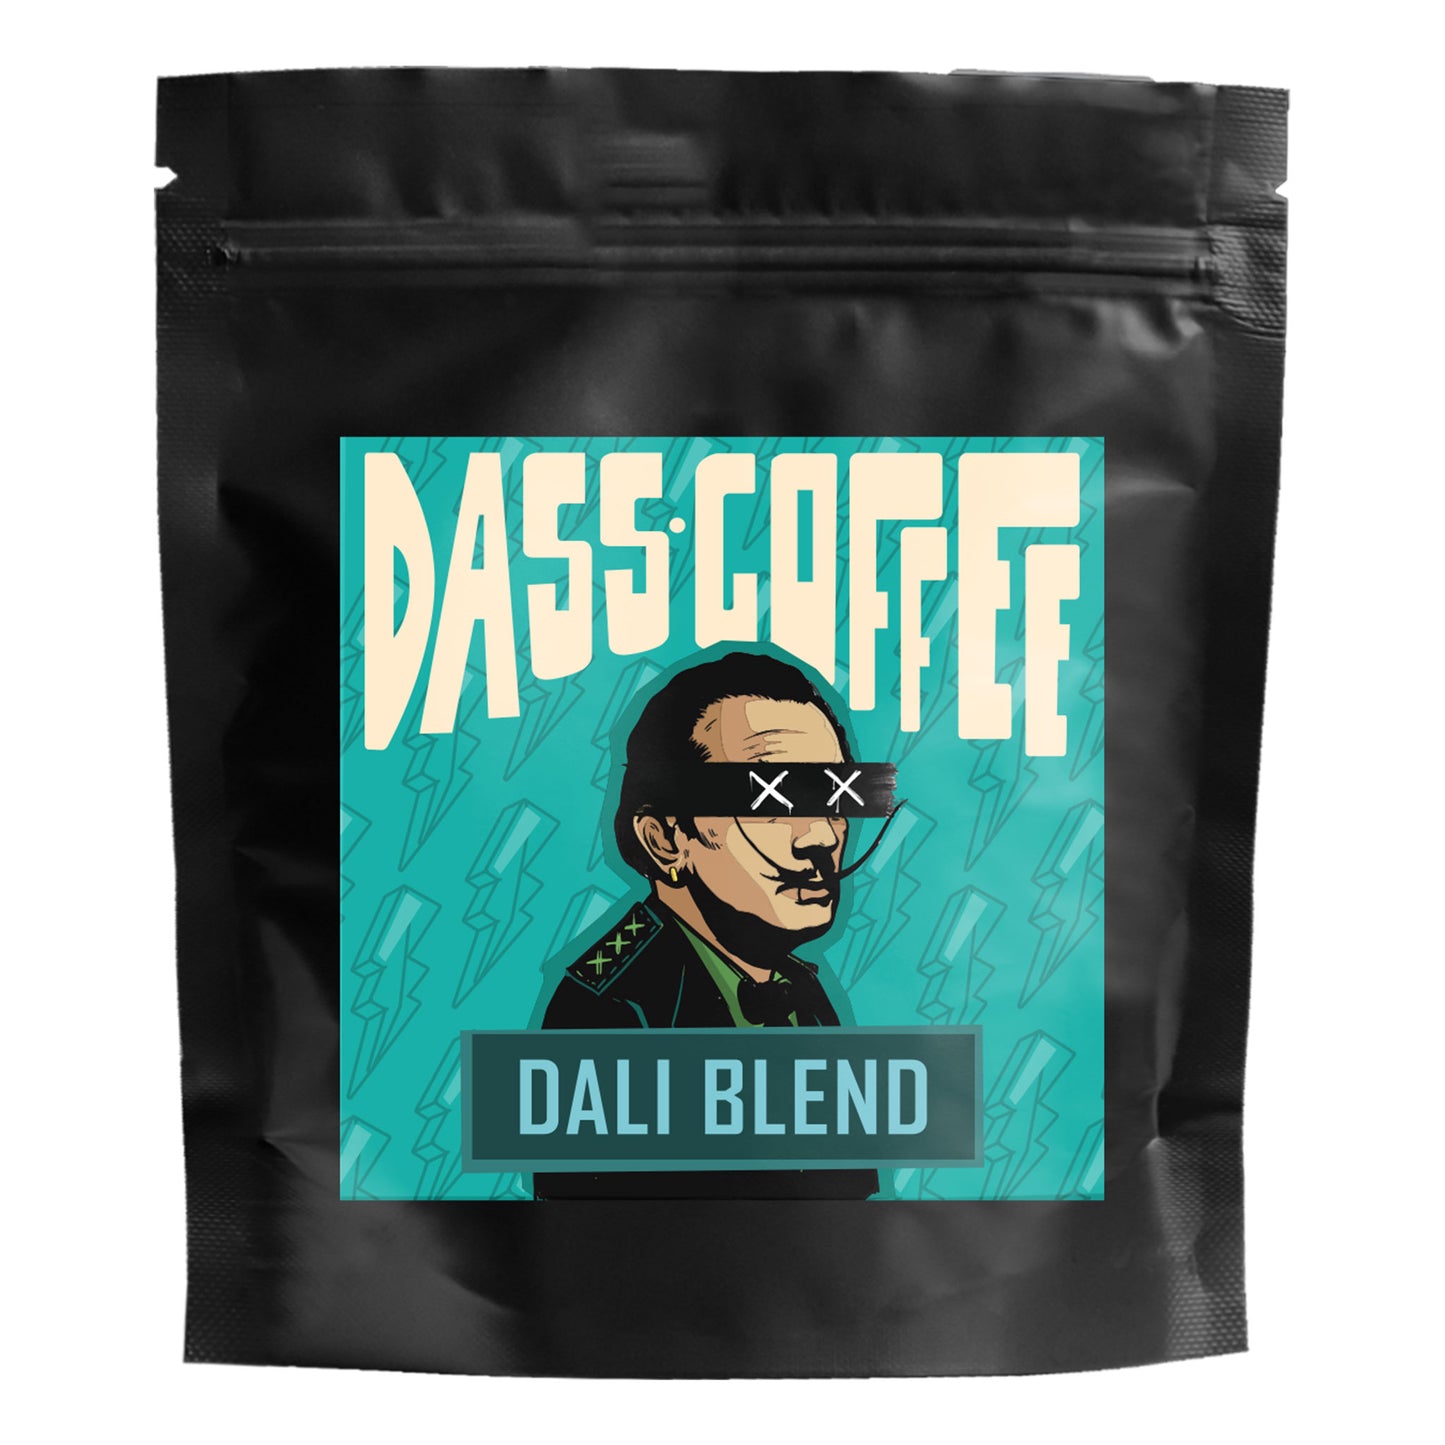 
                  
                    Dass Coffee Yöresel Filtre Kahve Tadım Deneme Seti Dali Blend
                  
                